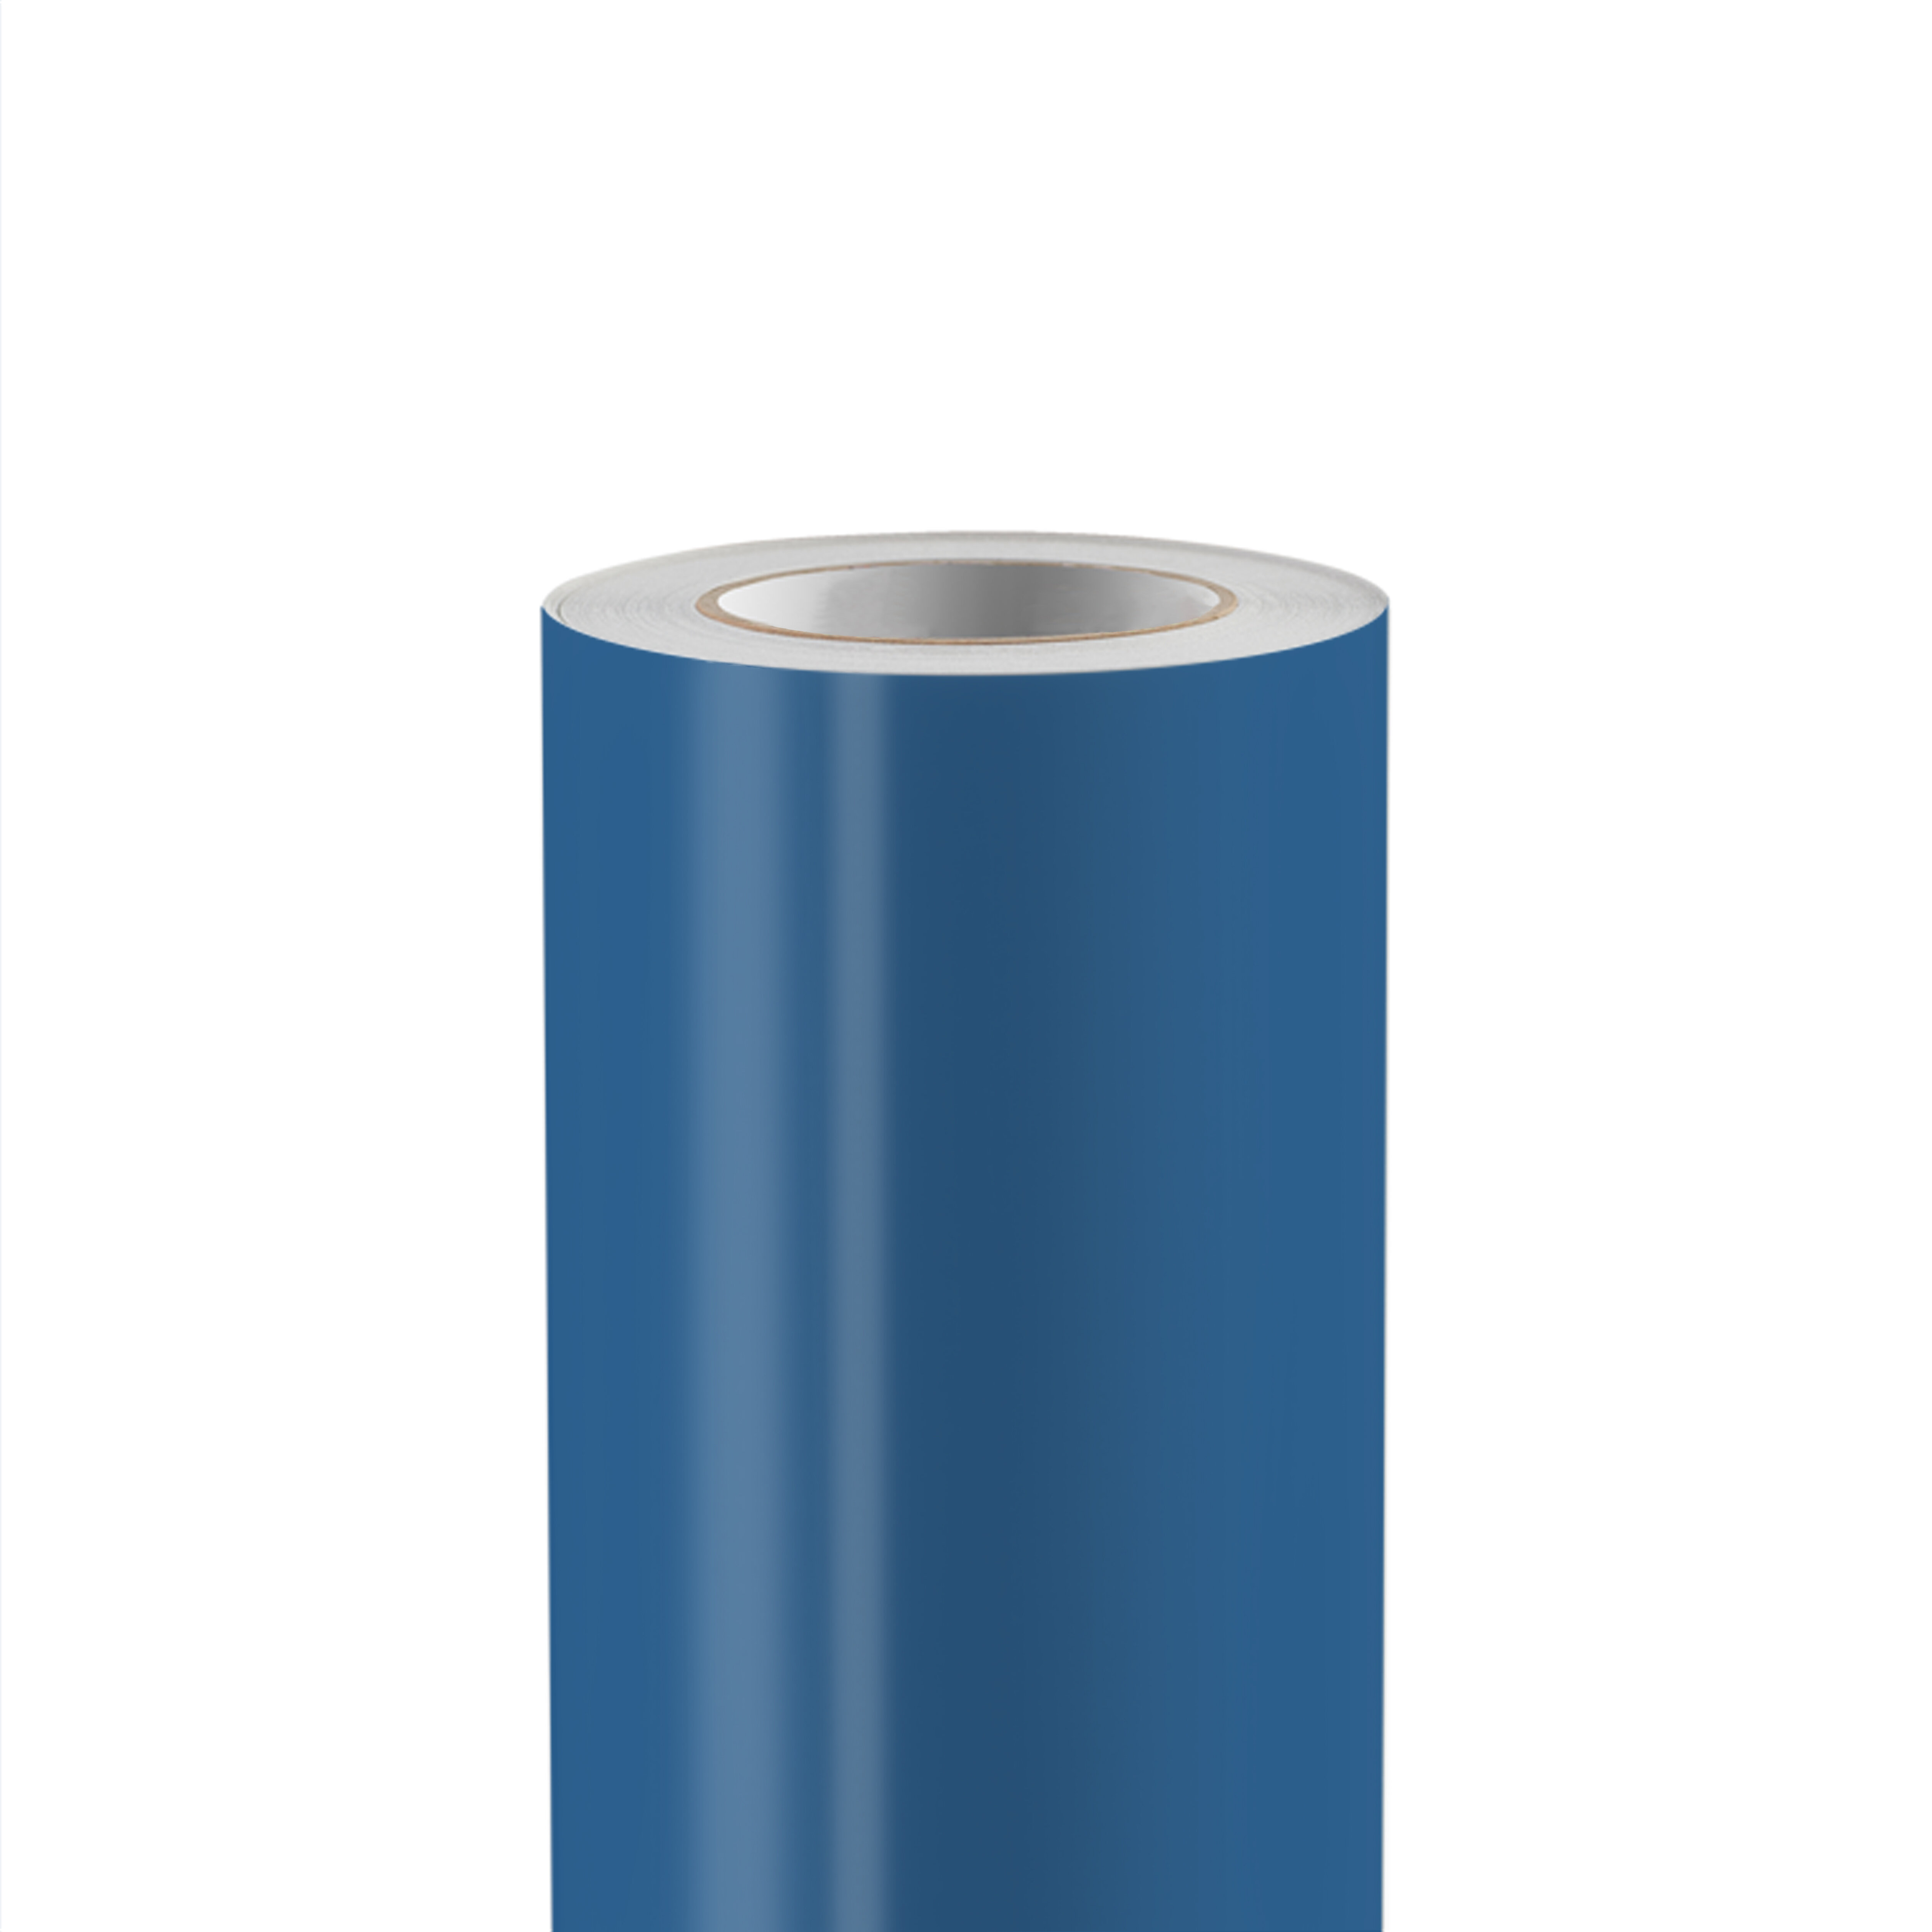 Fin de série - 3M™ Wrap Film Series 1380 M287 bleu ardoise metallique 1520 mm x 25 m 90 µ